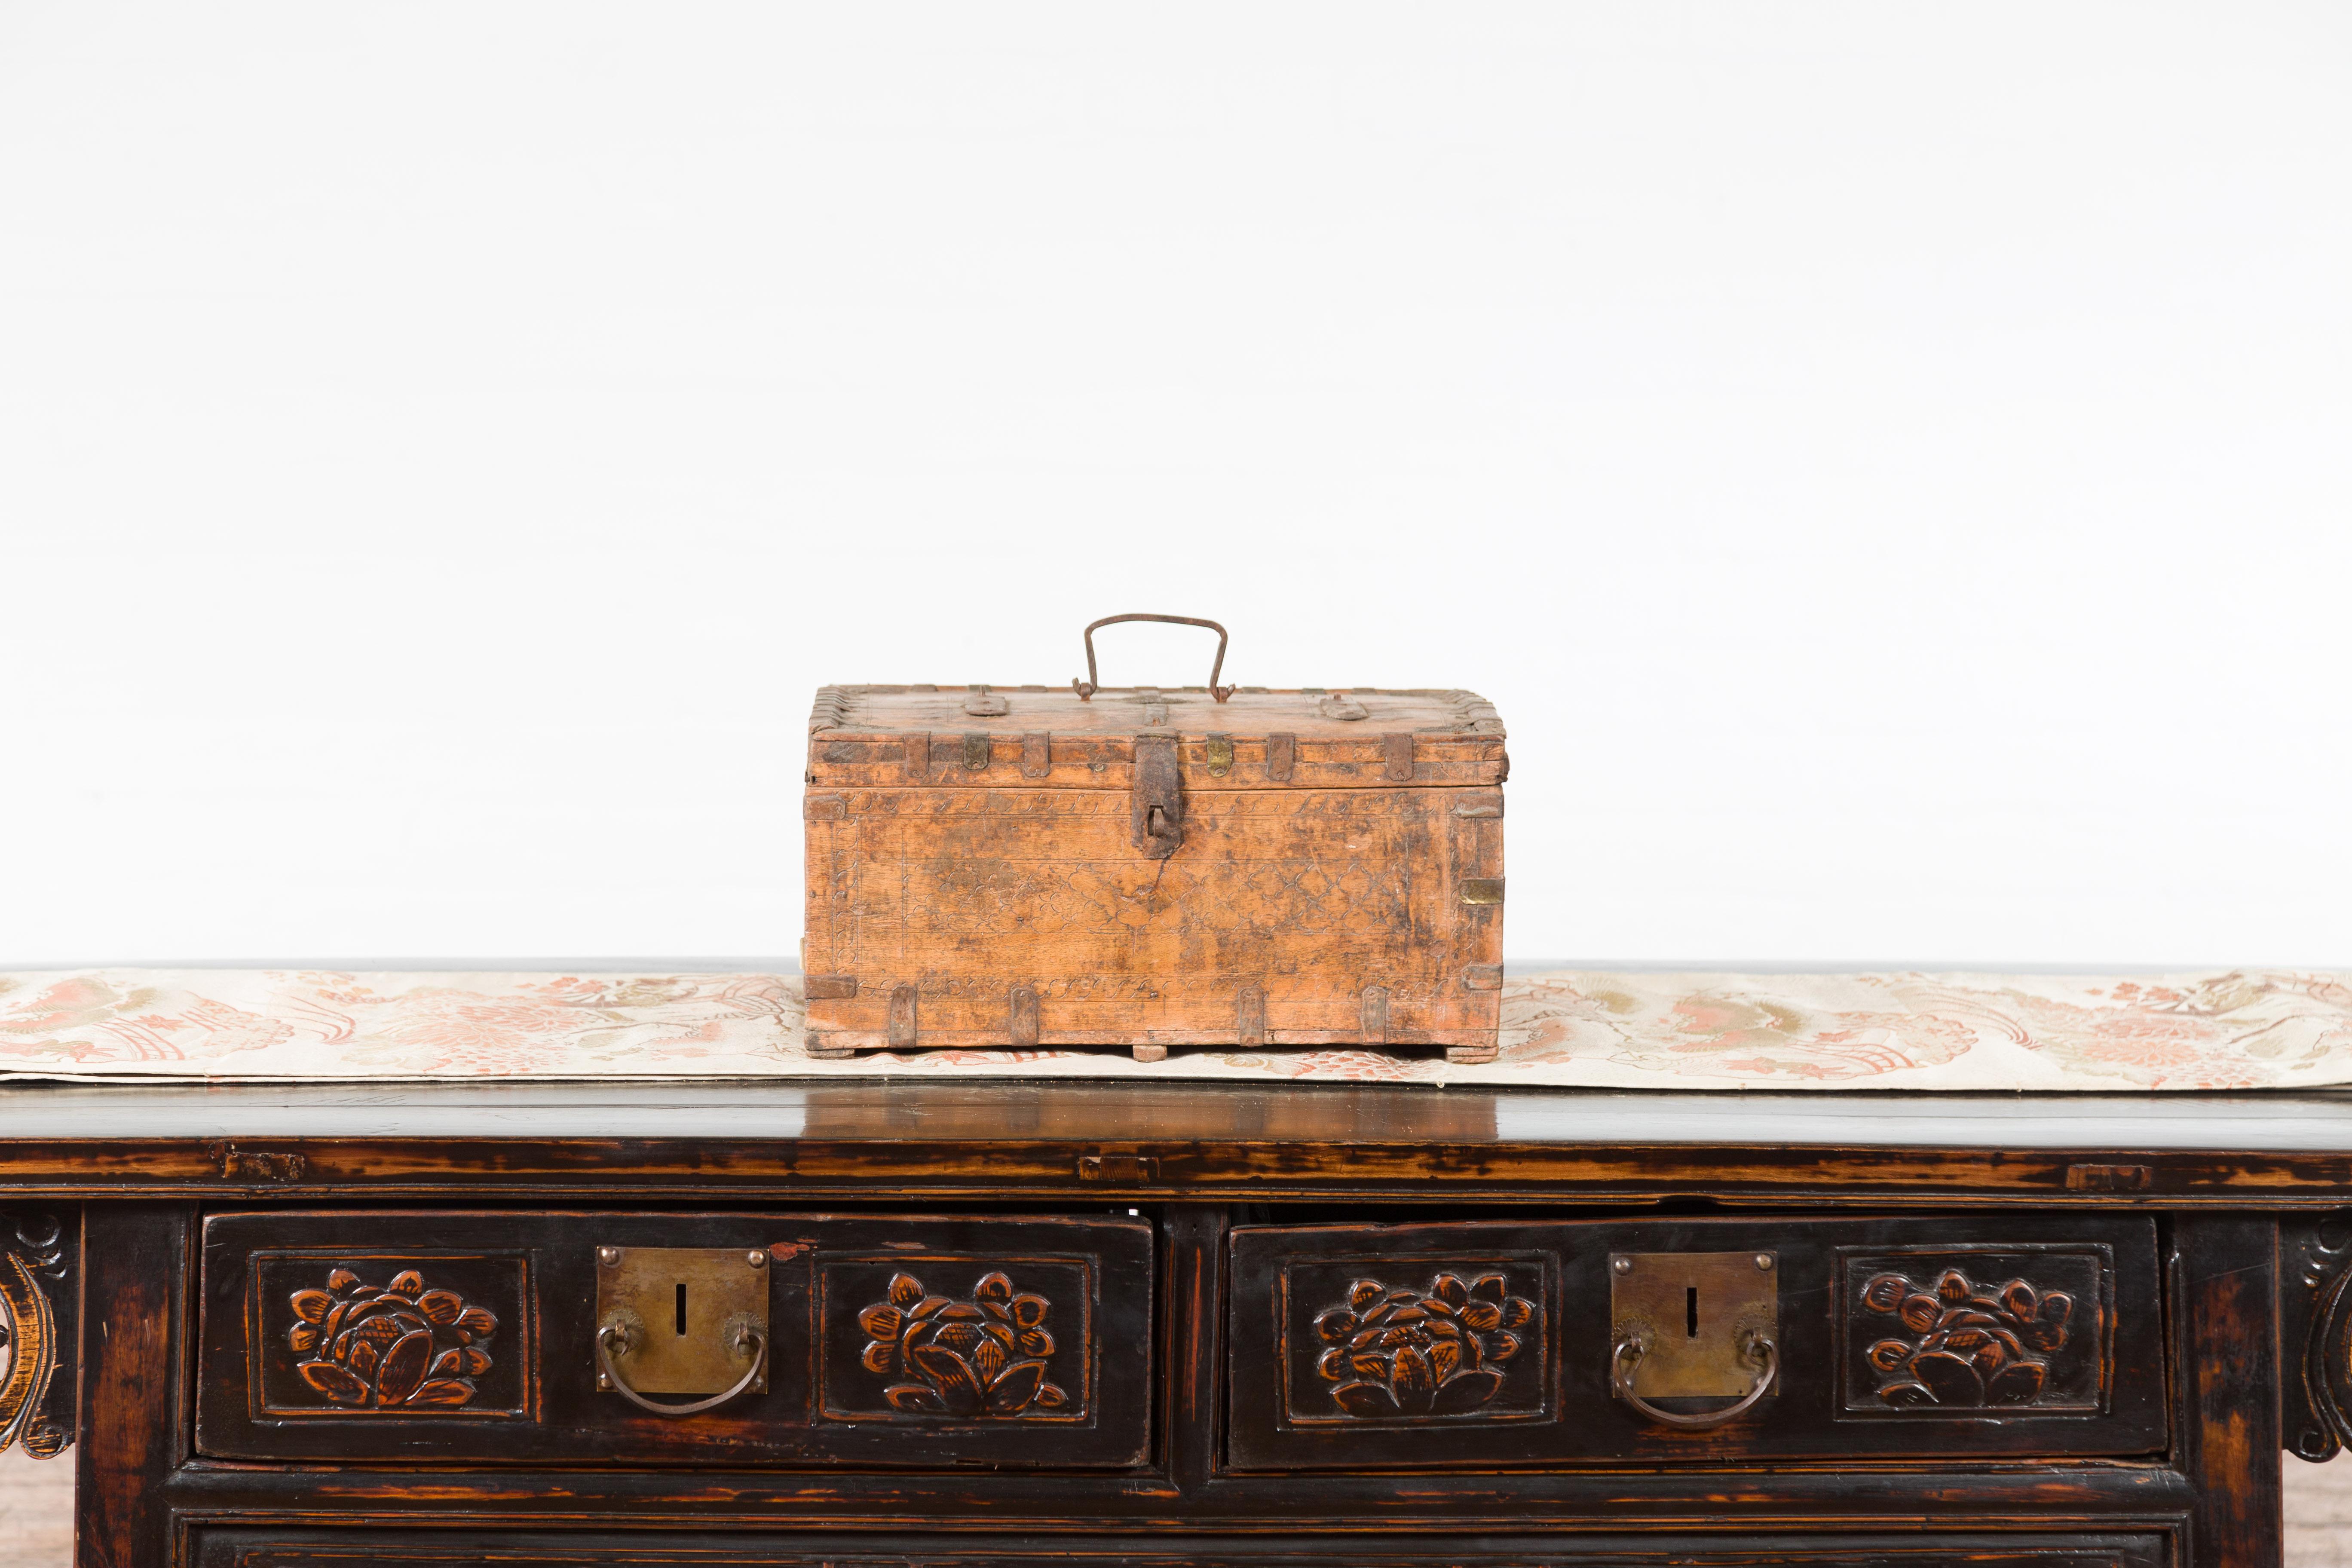 Boîte rustique indienne en bois du XIXe siècle, à l'aspect joliment patiné, avec des détails en fer et des motifs sculptés. Créée en Inde au XIXe siècle, cette boîte en bois présente un couvercle rectangulaire qui s'ouvre à moitié pour révéler un